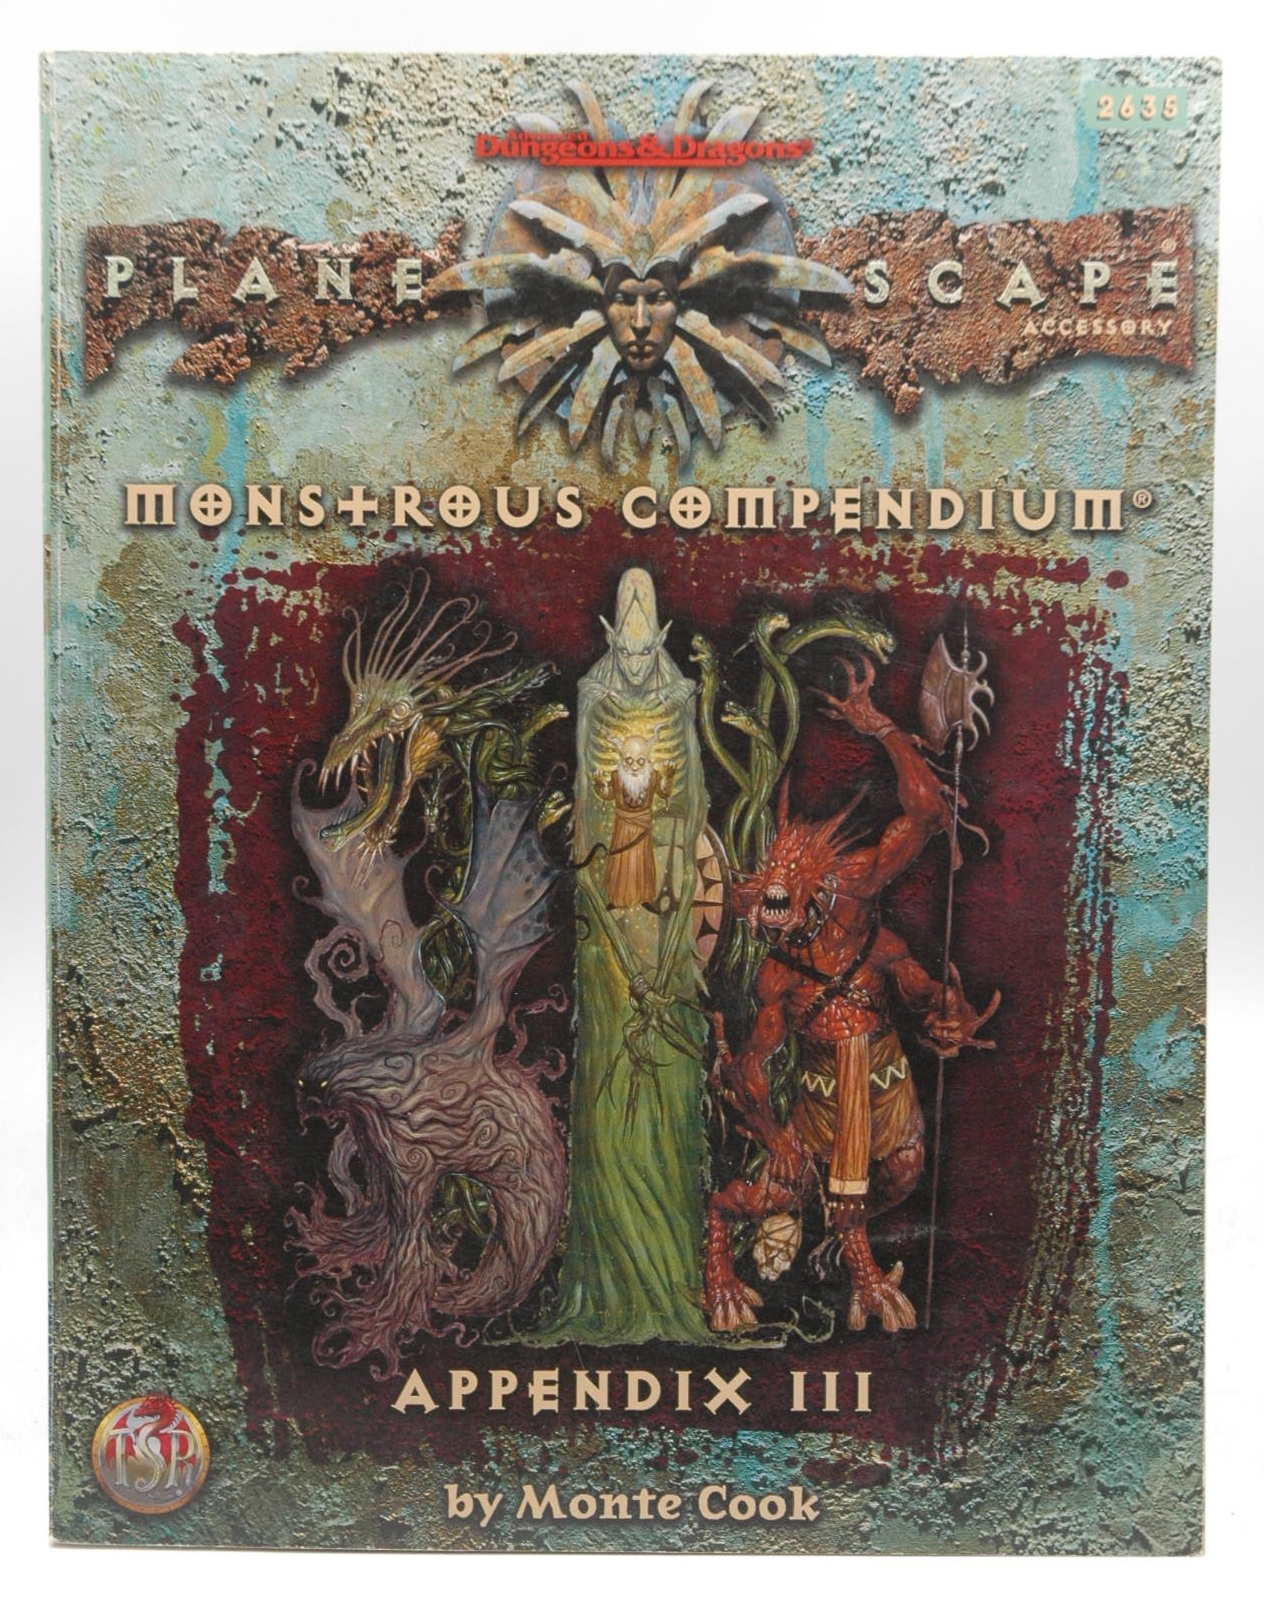 Planescape, Appendix III (Planescape Campaign) by Monstrous Compendium (1998-03-06) - Monstrous Compendium